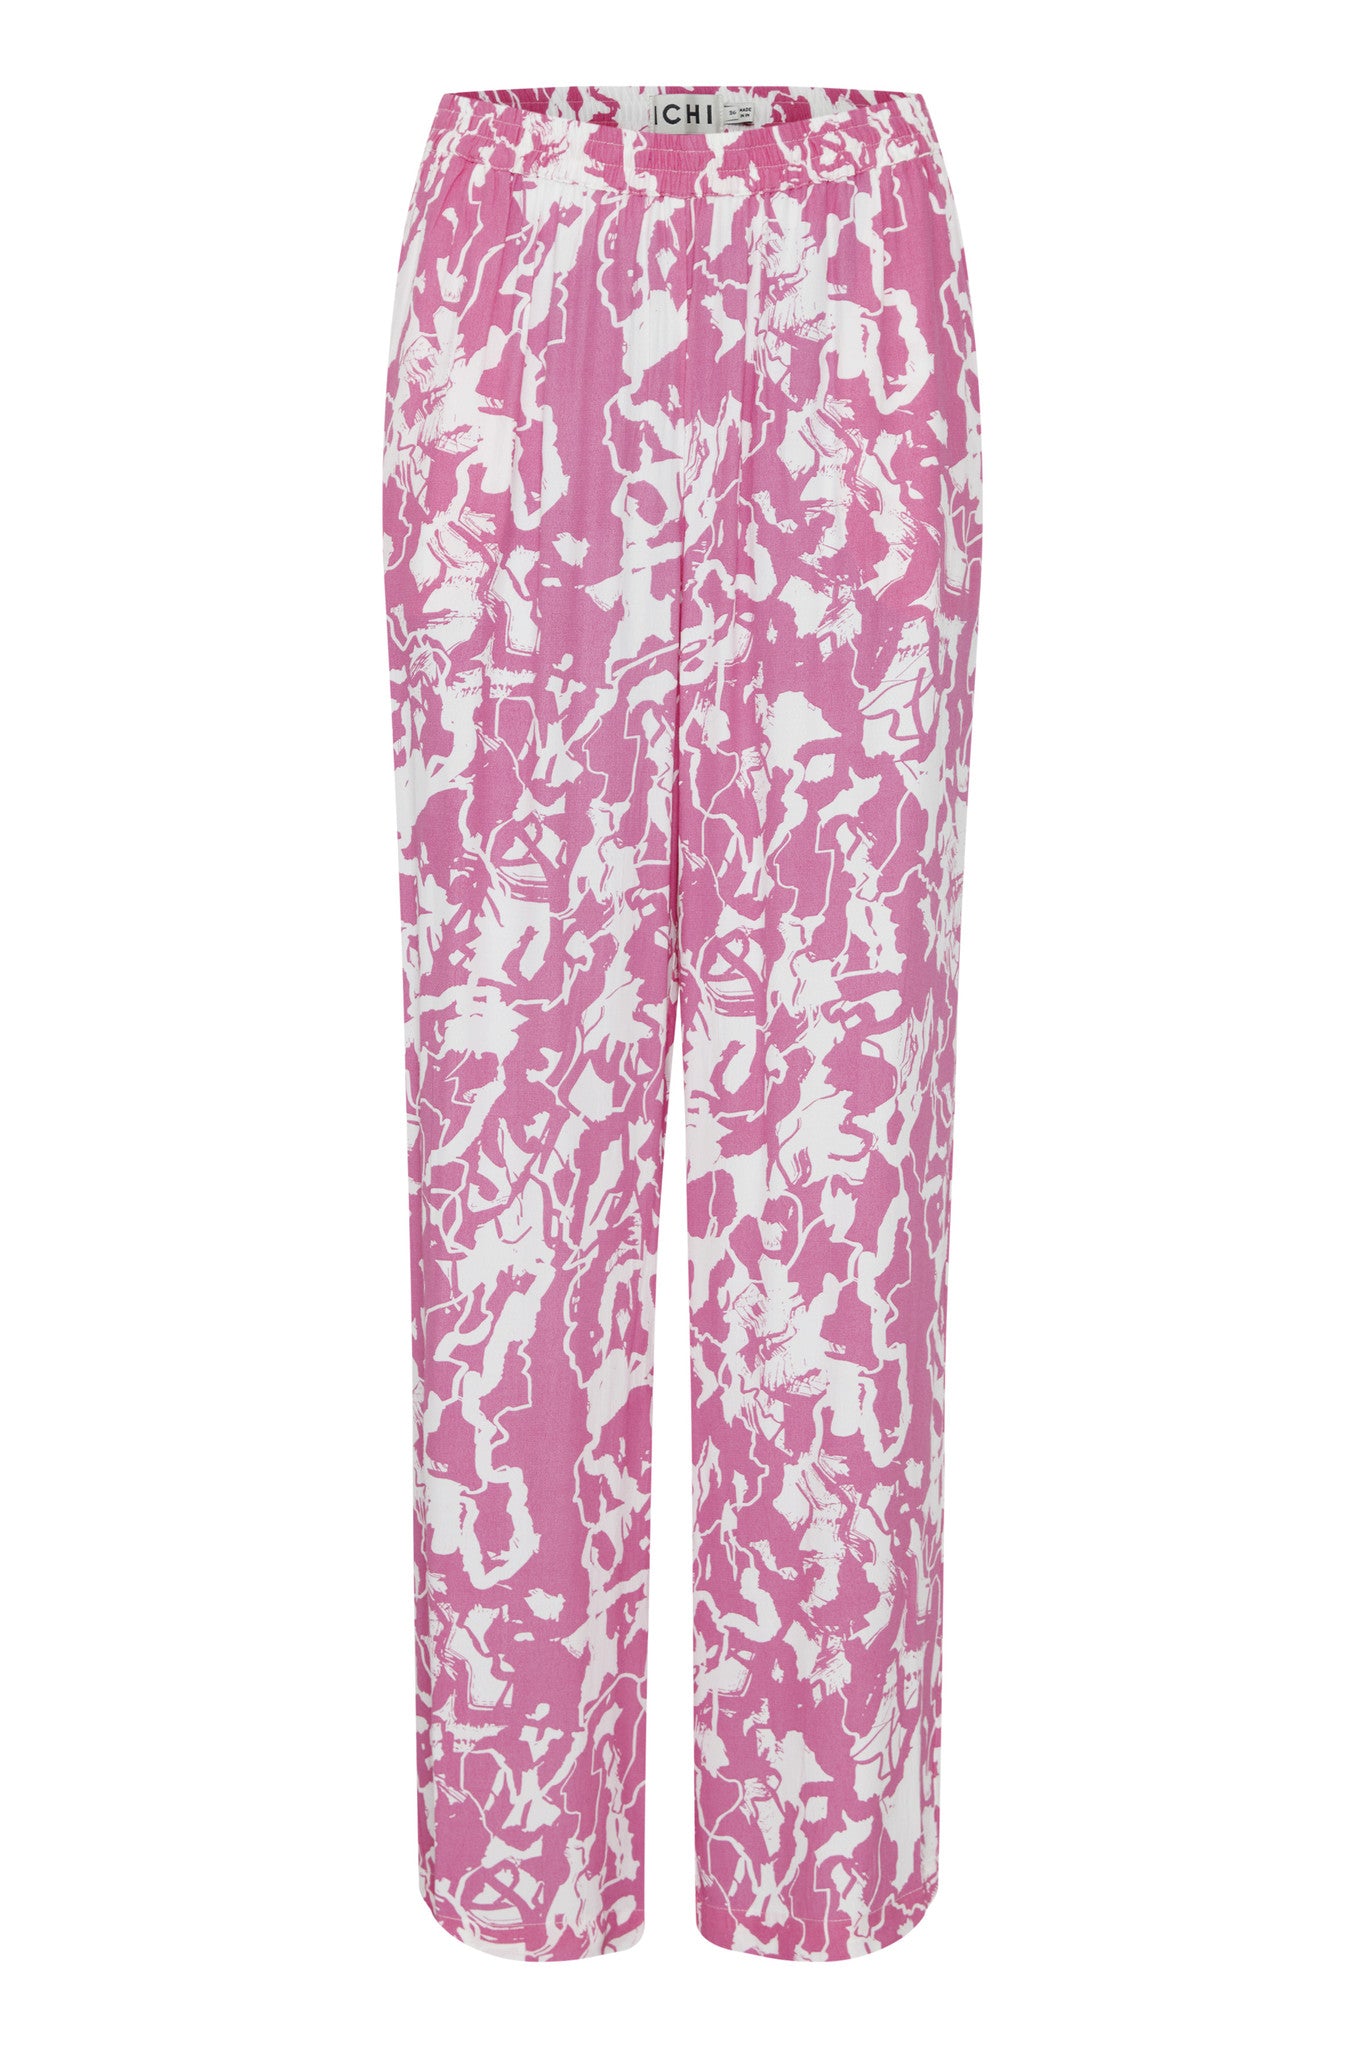 Regine - Pants - Super Pink